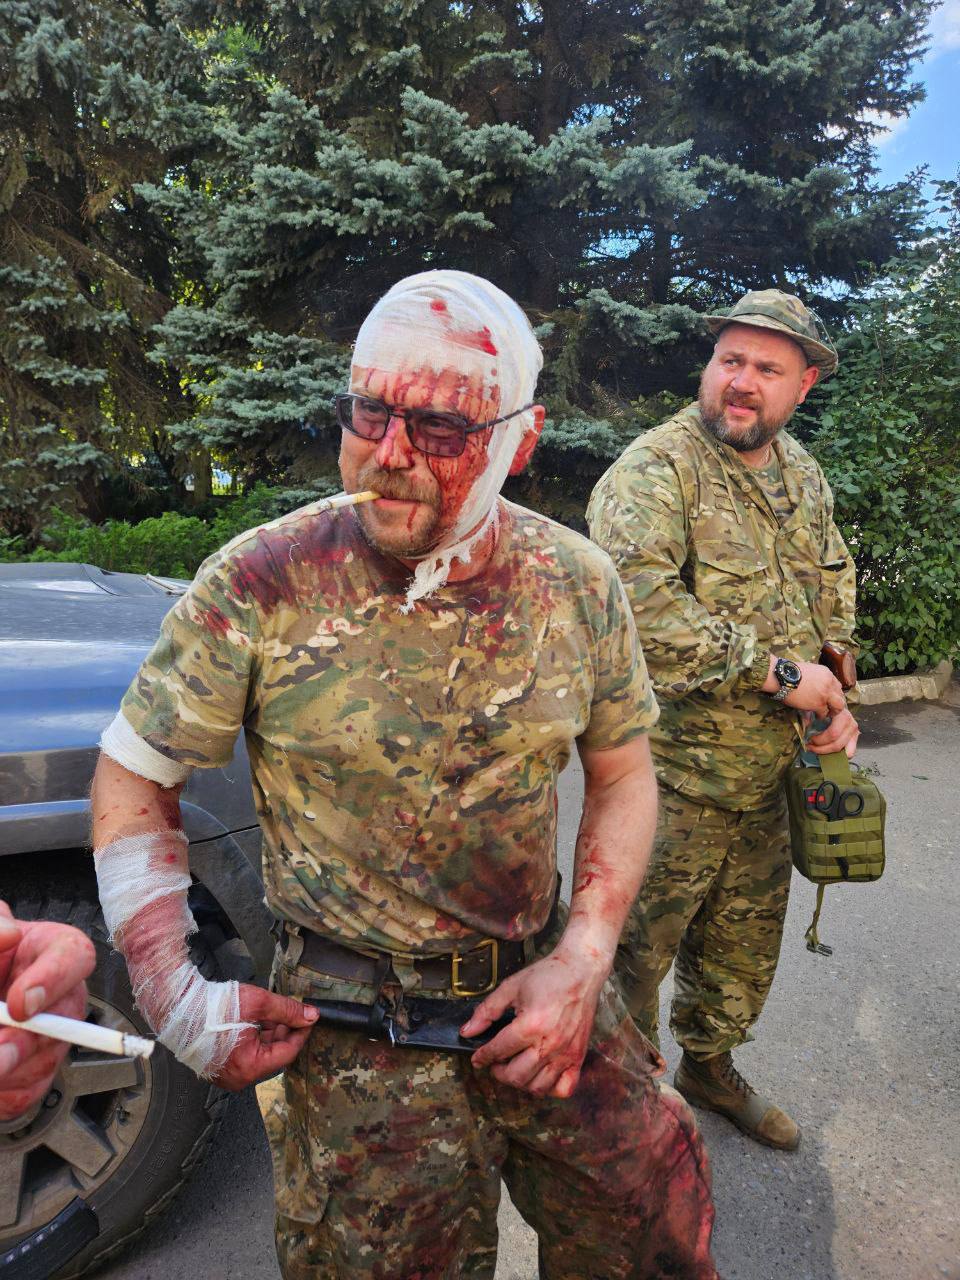 Треш-вісті з боліт 22 липня: впав міст, кип’яток вбив людей, божевільний захопив будинок Януковича (фото, відео)